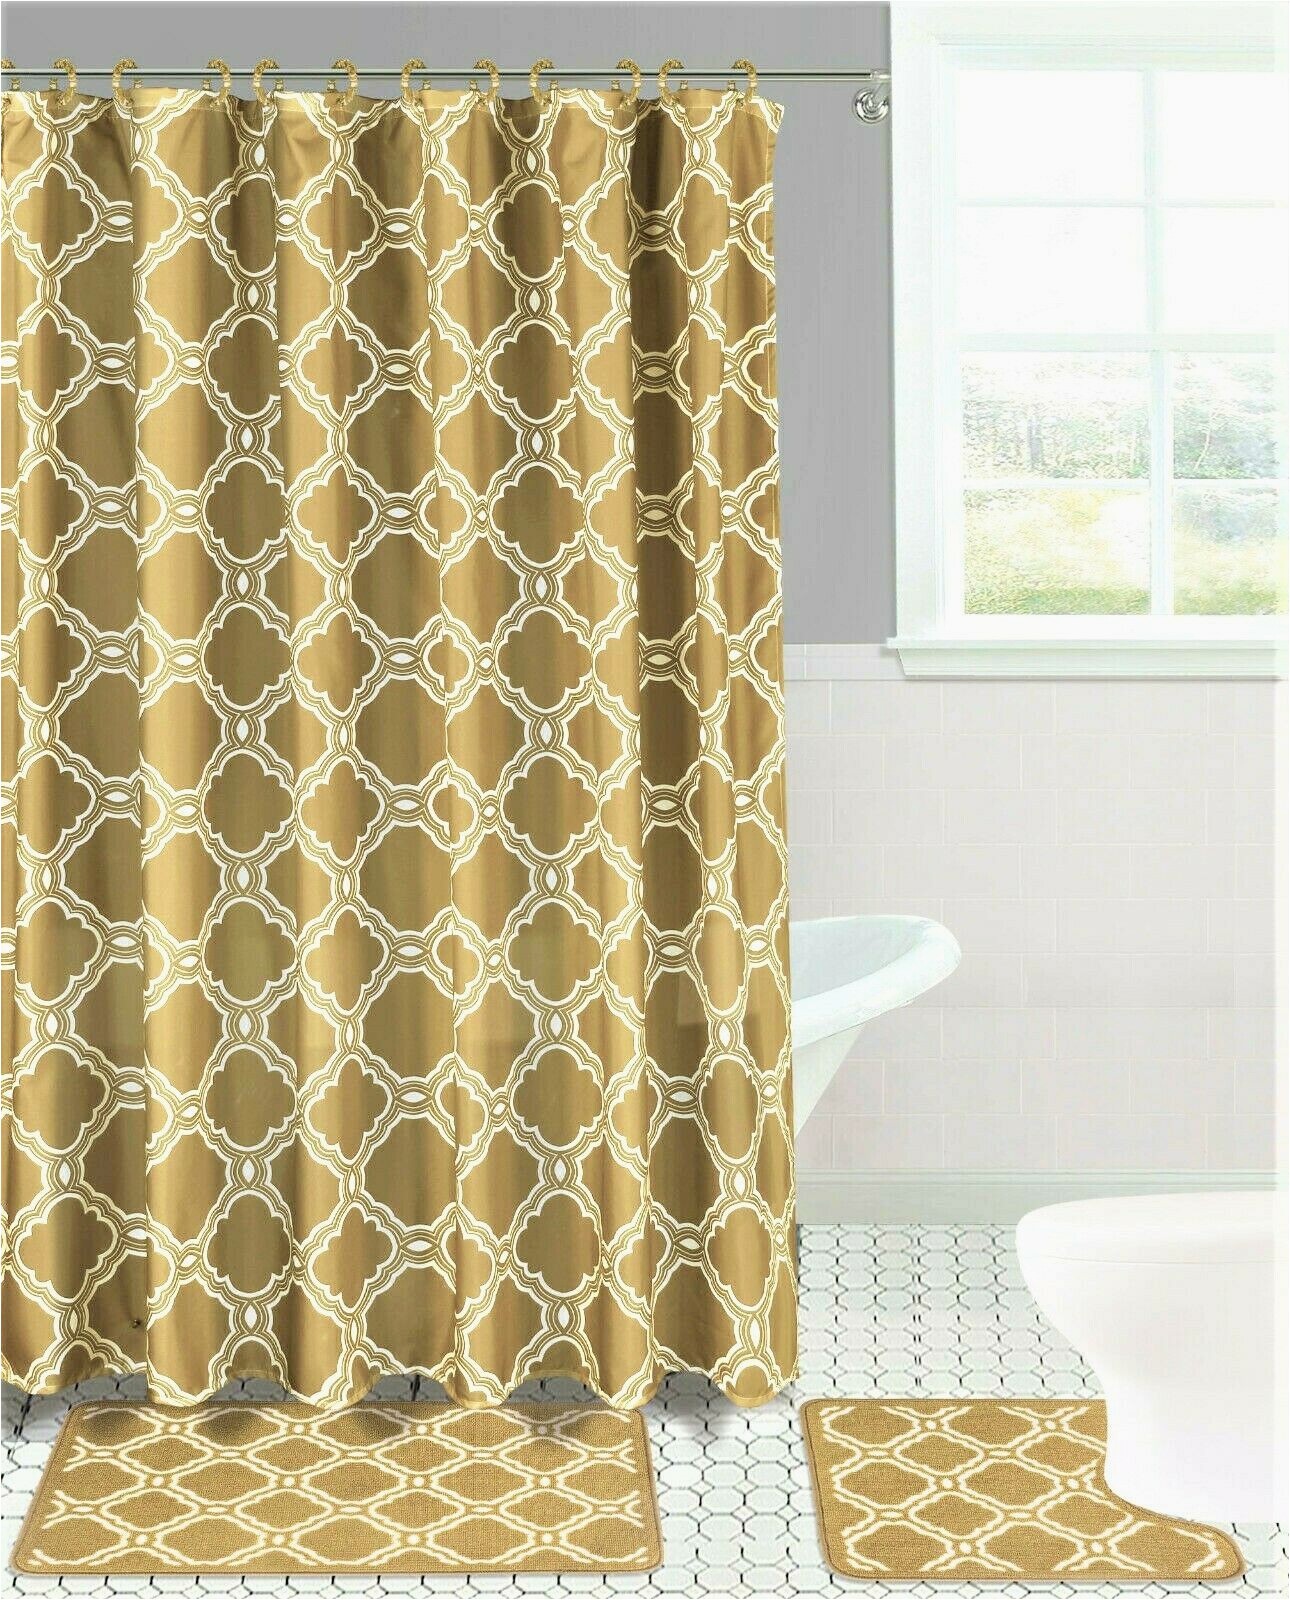 30 X 72 Bath Rug Elegant 4pc Set Bathroom Trellis Morocco Honey Pattern Taupe Rug softy Washable Includes 1 Bath Mat 18"x 30" 1 Bath Mat 17"x 17" 12 Fabric Covered